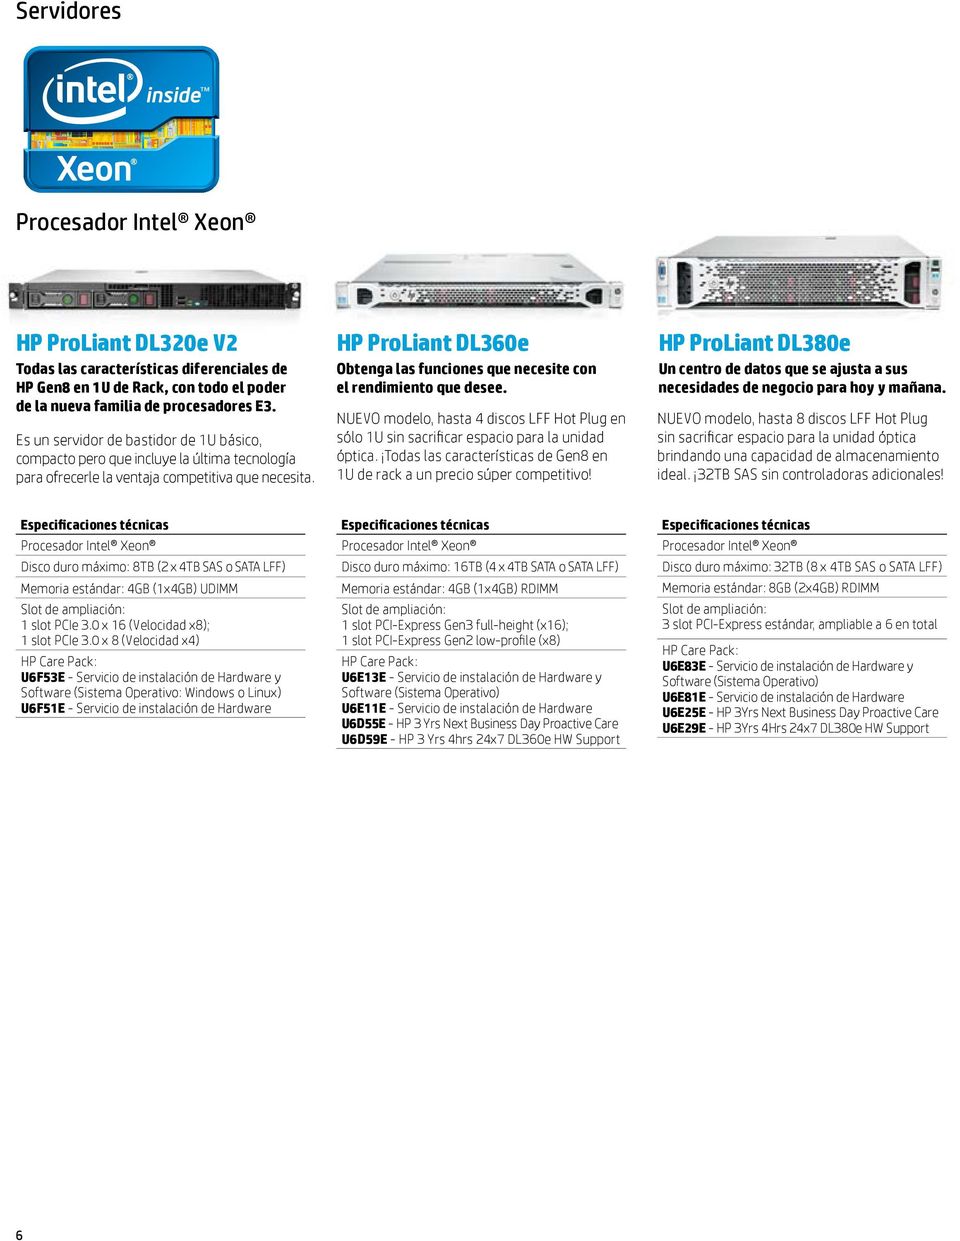 HP ProLiant DL360e Obtenga las funciones que necesite con el rendimiento que desee. NUEVO modelo, hasta 4 discos LFF Hot Plug en sólo 1U sin sacrificar espacio para la unidad óptica.